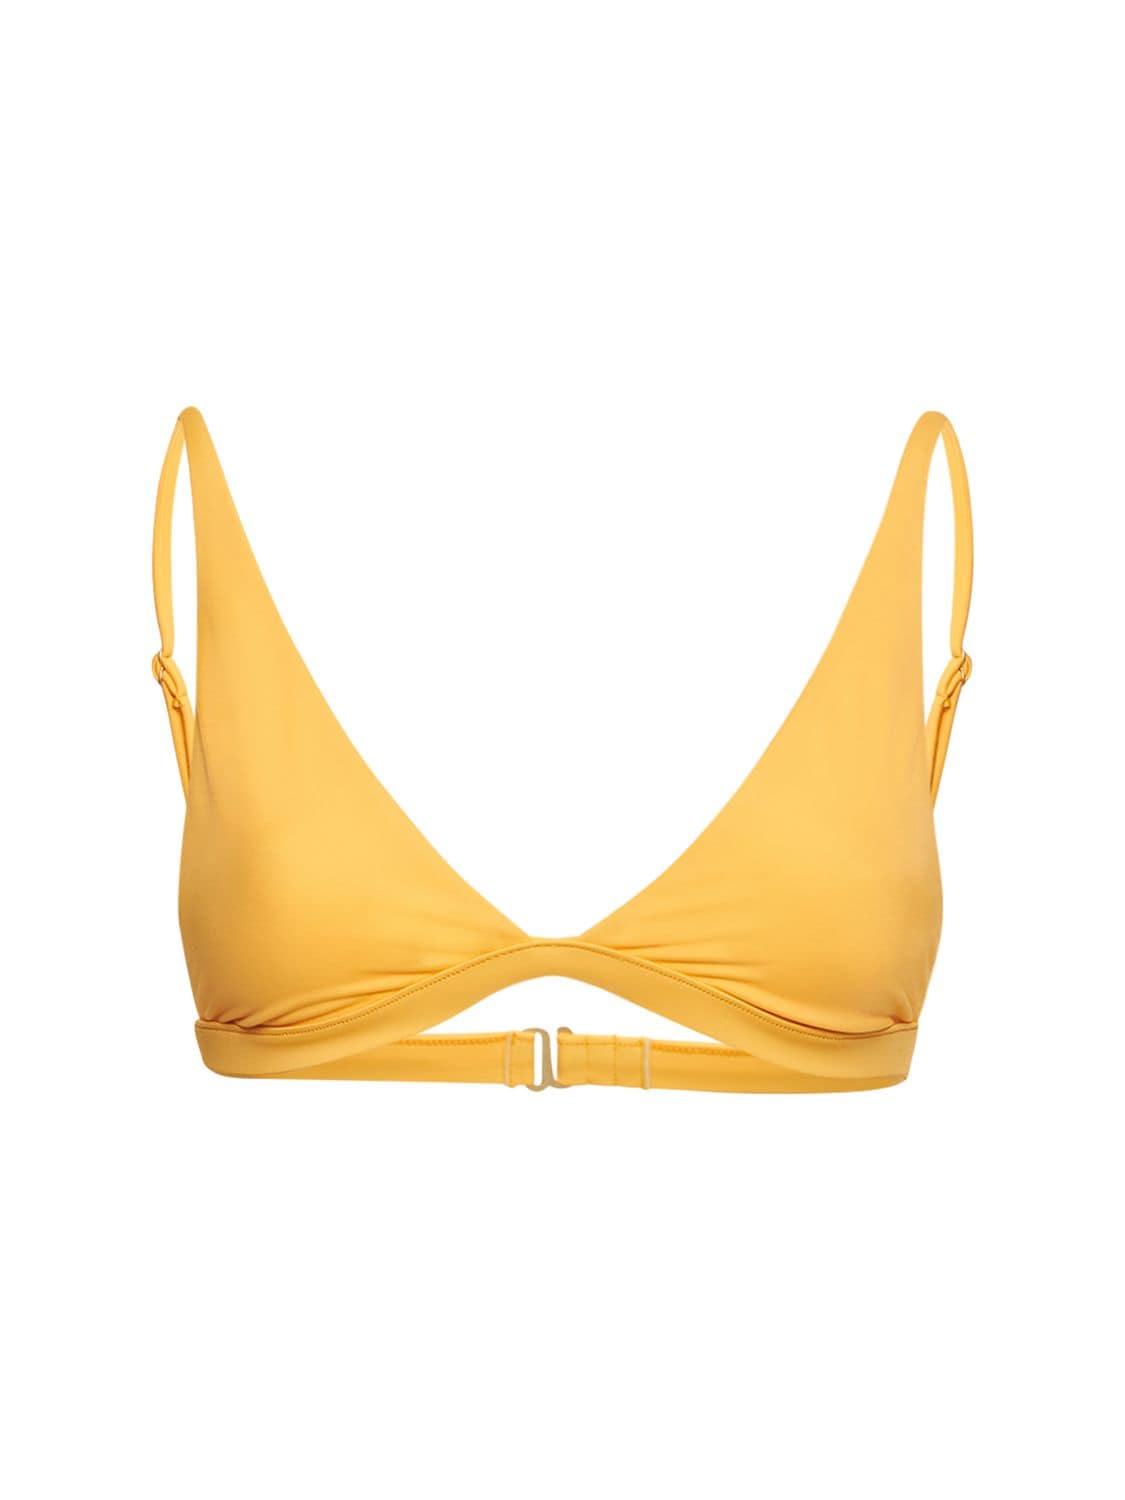 Dos Gardenias Rebel Rebel Triangle Bikini Top In Yellow